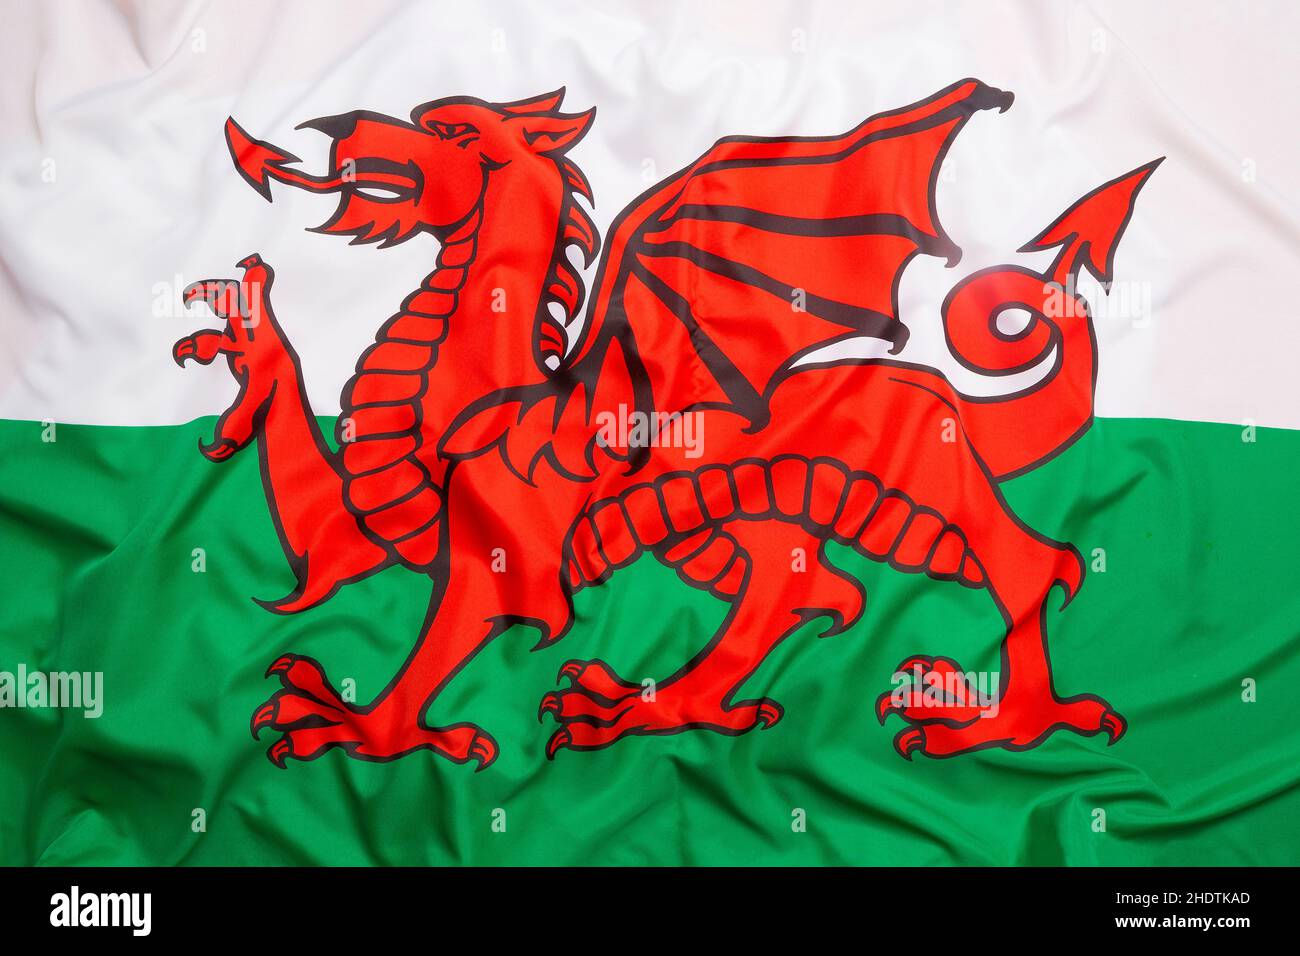 dragon, drapeau national, pays de galles, dragons, drapeaux nationaux Banque D'Images